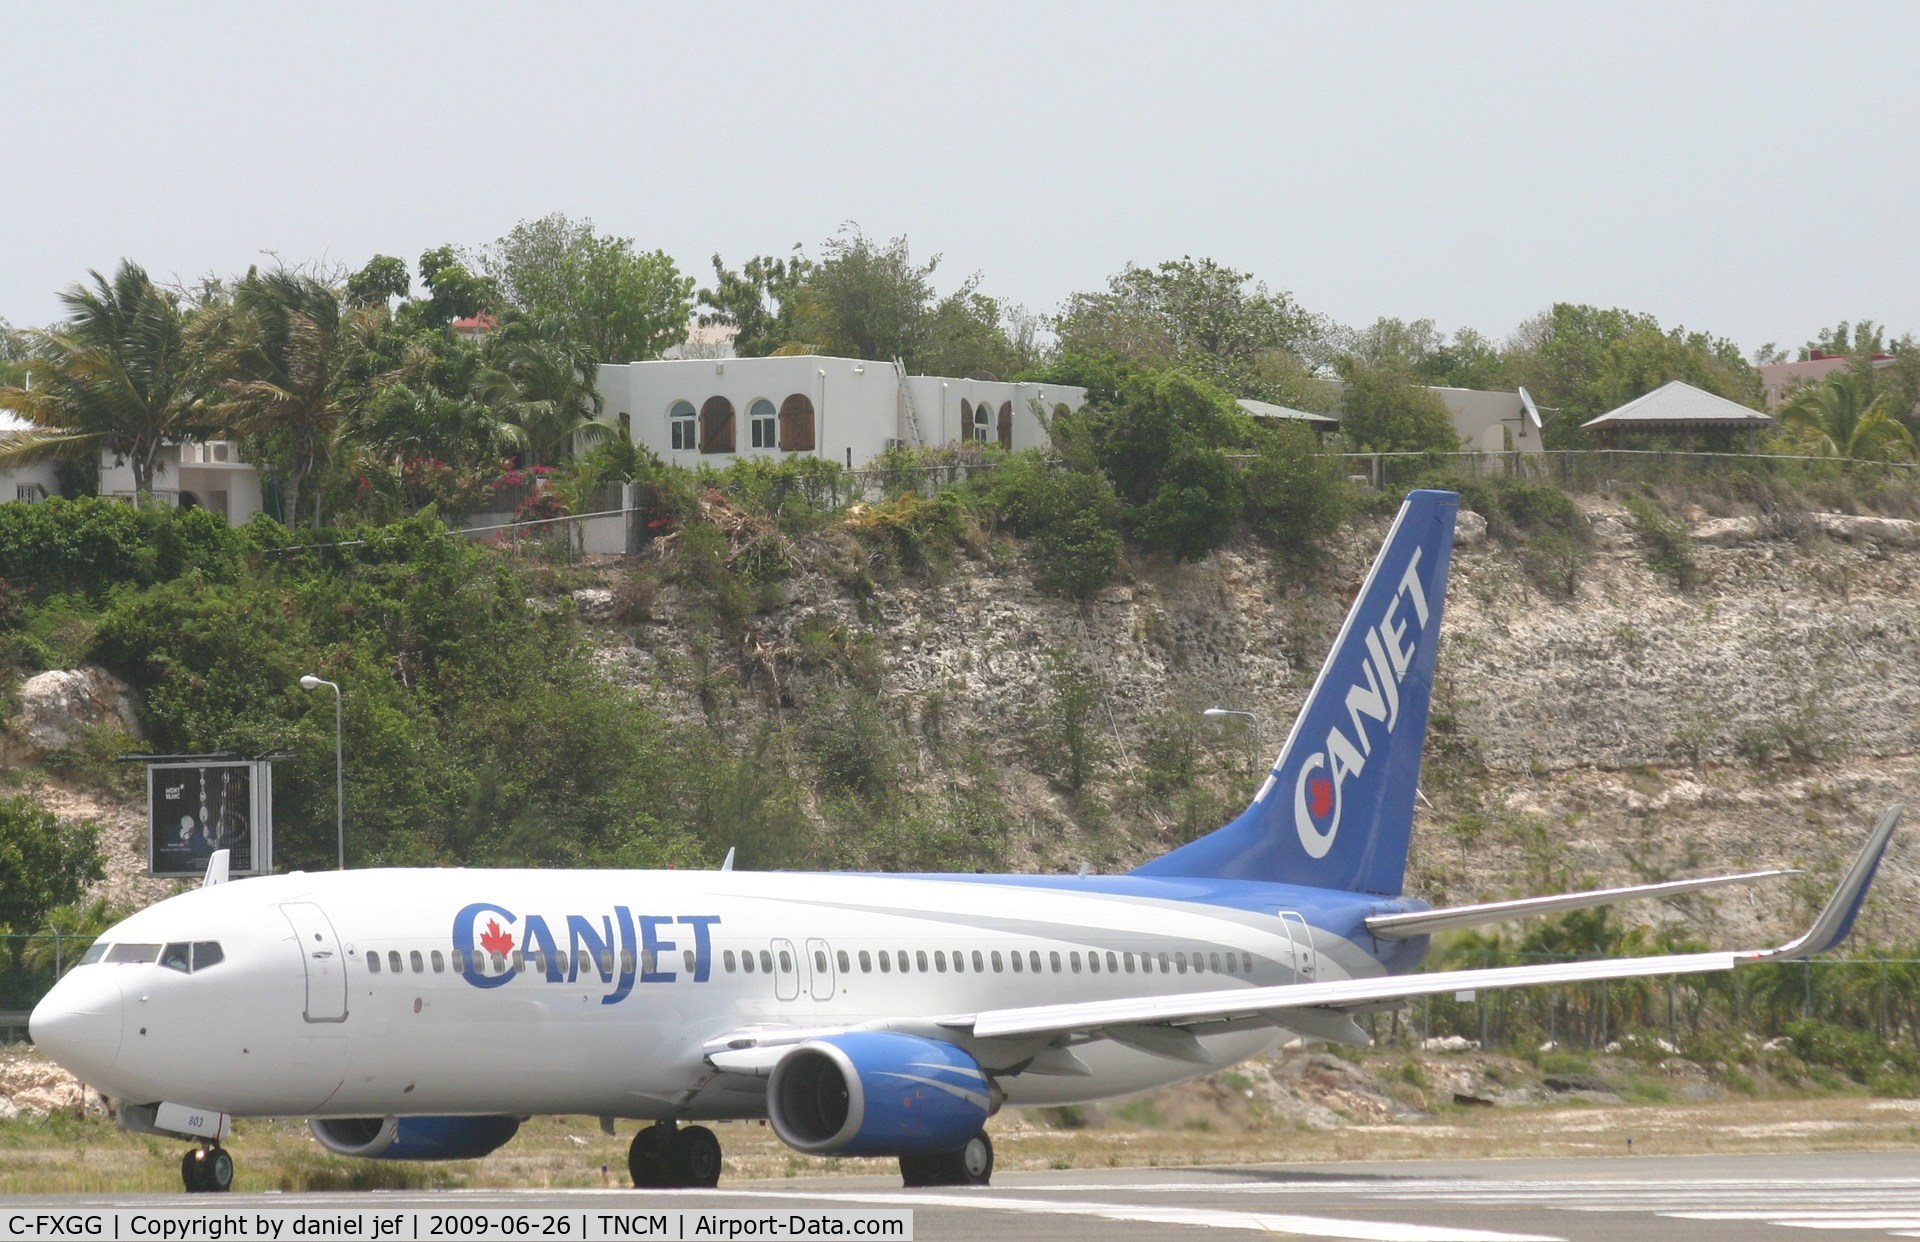 C-FXGG, 2000 Boeing 737-81Q C/N 29051, taxing runway 10